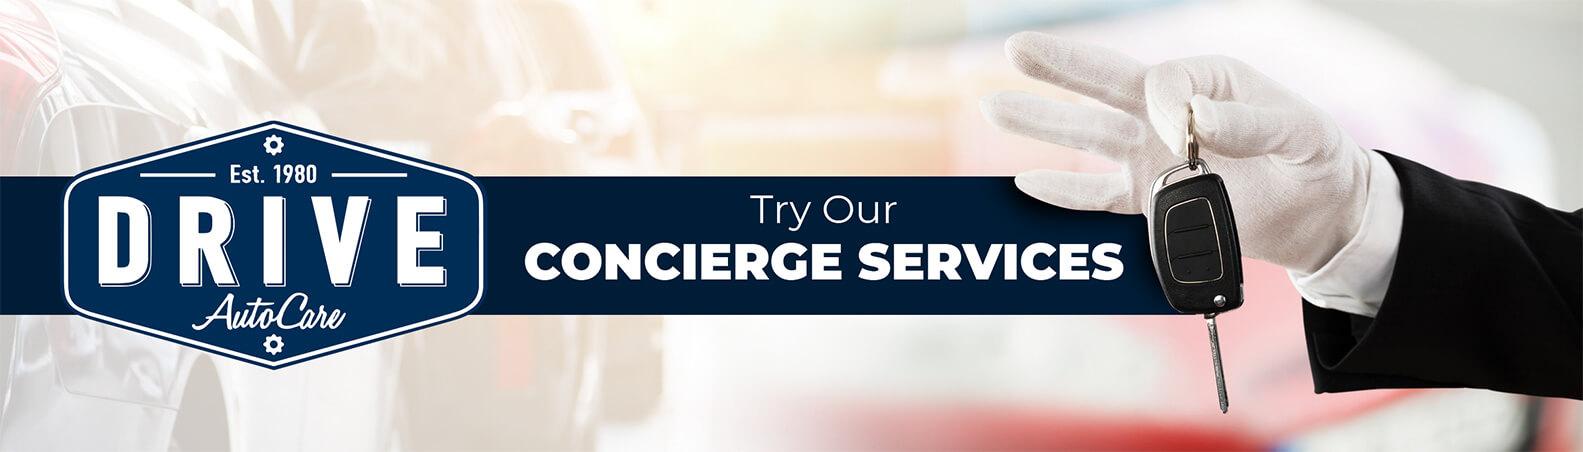 Concierge Service | DRIVE AutoCare